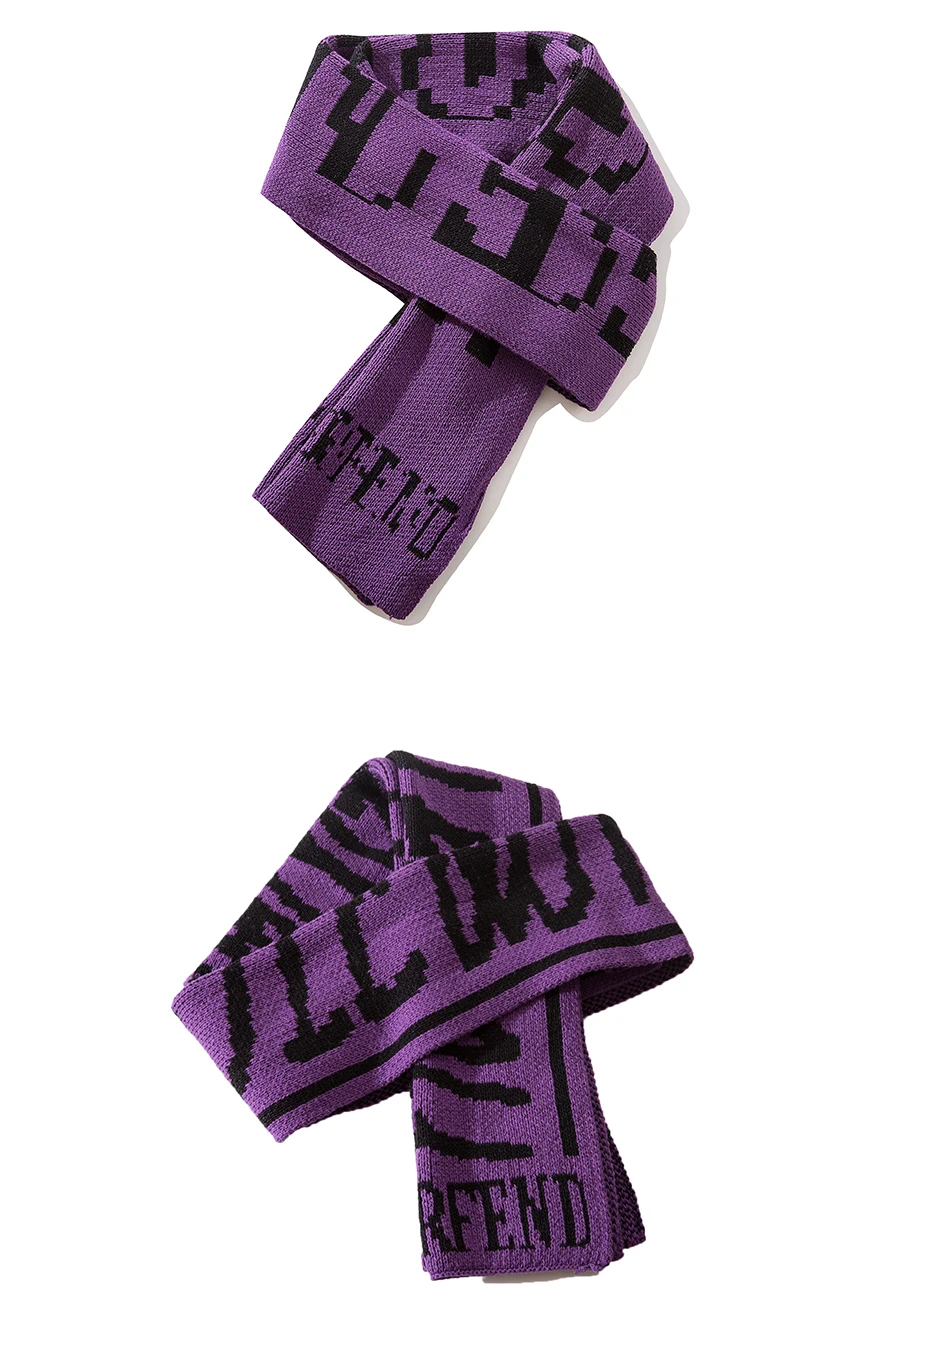 Aelfric Eden 2018 Новая мода зимние теплые шарфы Для мужчин письмо хлопковый шарф с принтом хип-хоп женский мужской платок Обёрточная бумага шарф